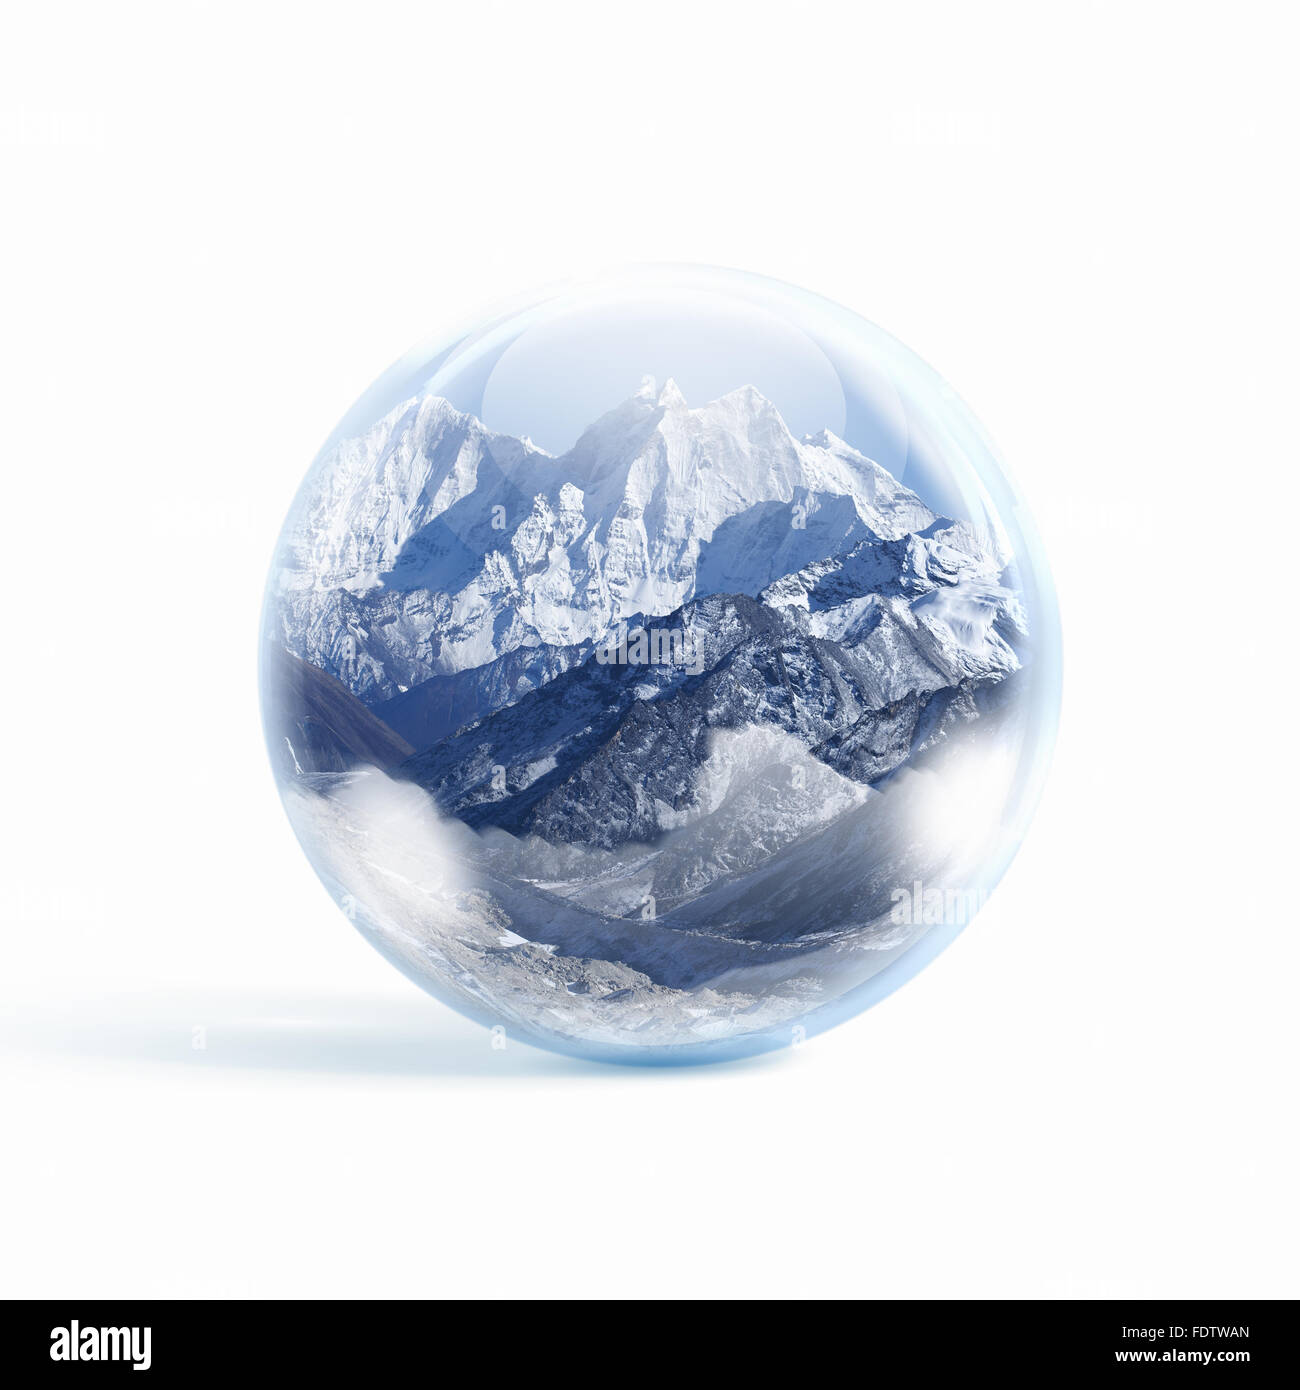 Une boule de neige en verre transparent avec de hautes montagnes à l'intérieur. Banque D'Images